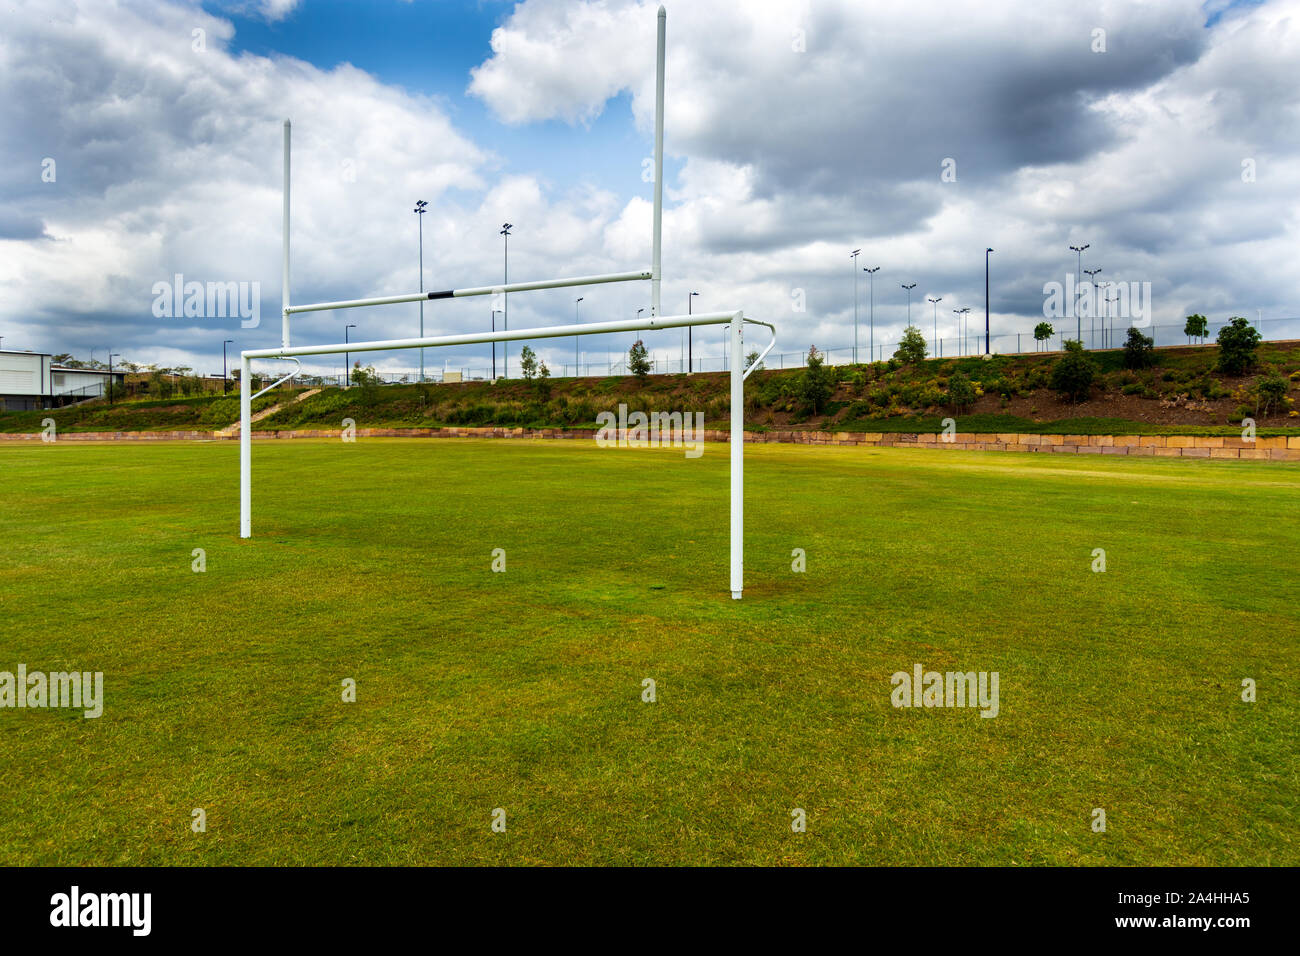 Buts de football sur un terrain de sport vide Banque D'Images